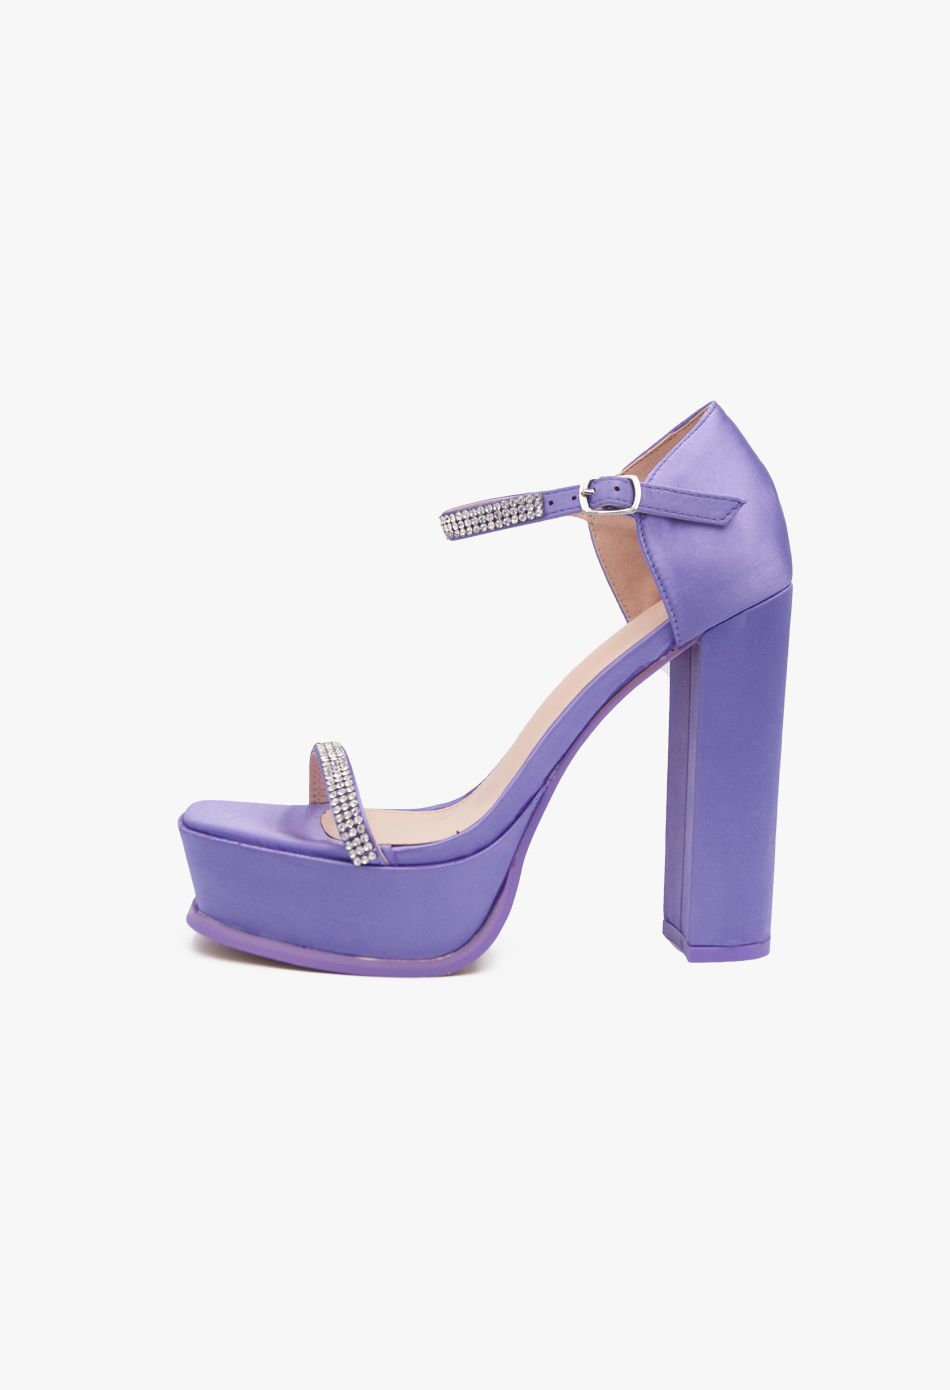 Σατέν Ψηλοτάκουνα Πέδιλα με Στρασ & Μπαρέτα και Φιάπα Μωβ / B5953-purple Ανοιχτά Παπούτσια joya.gr